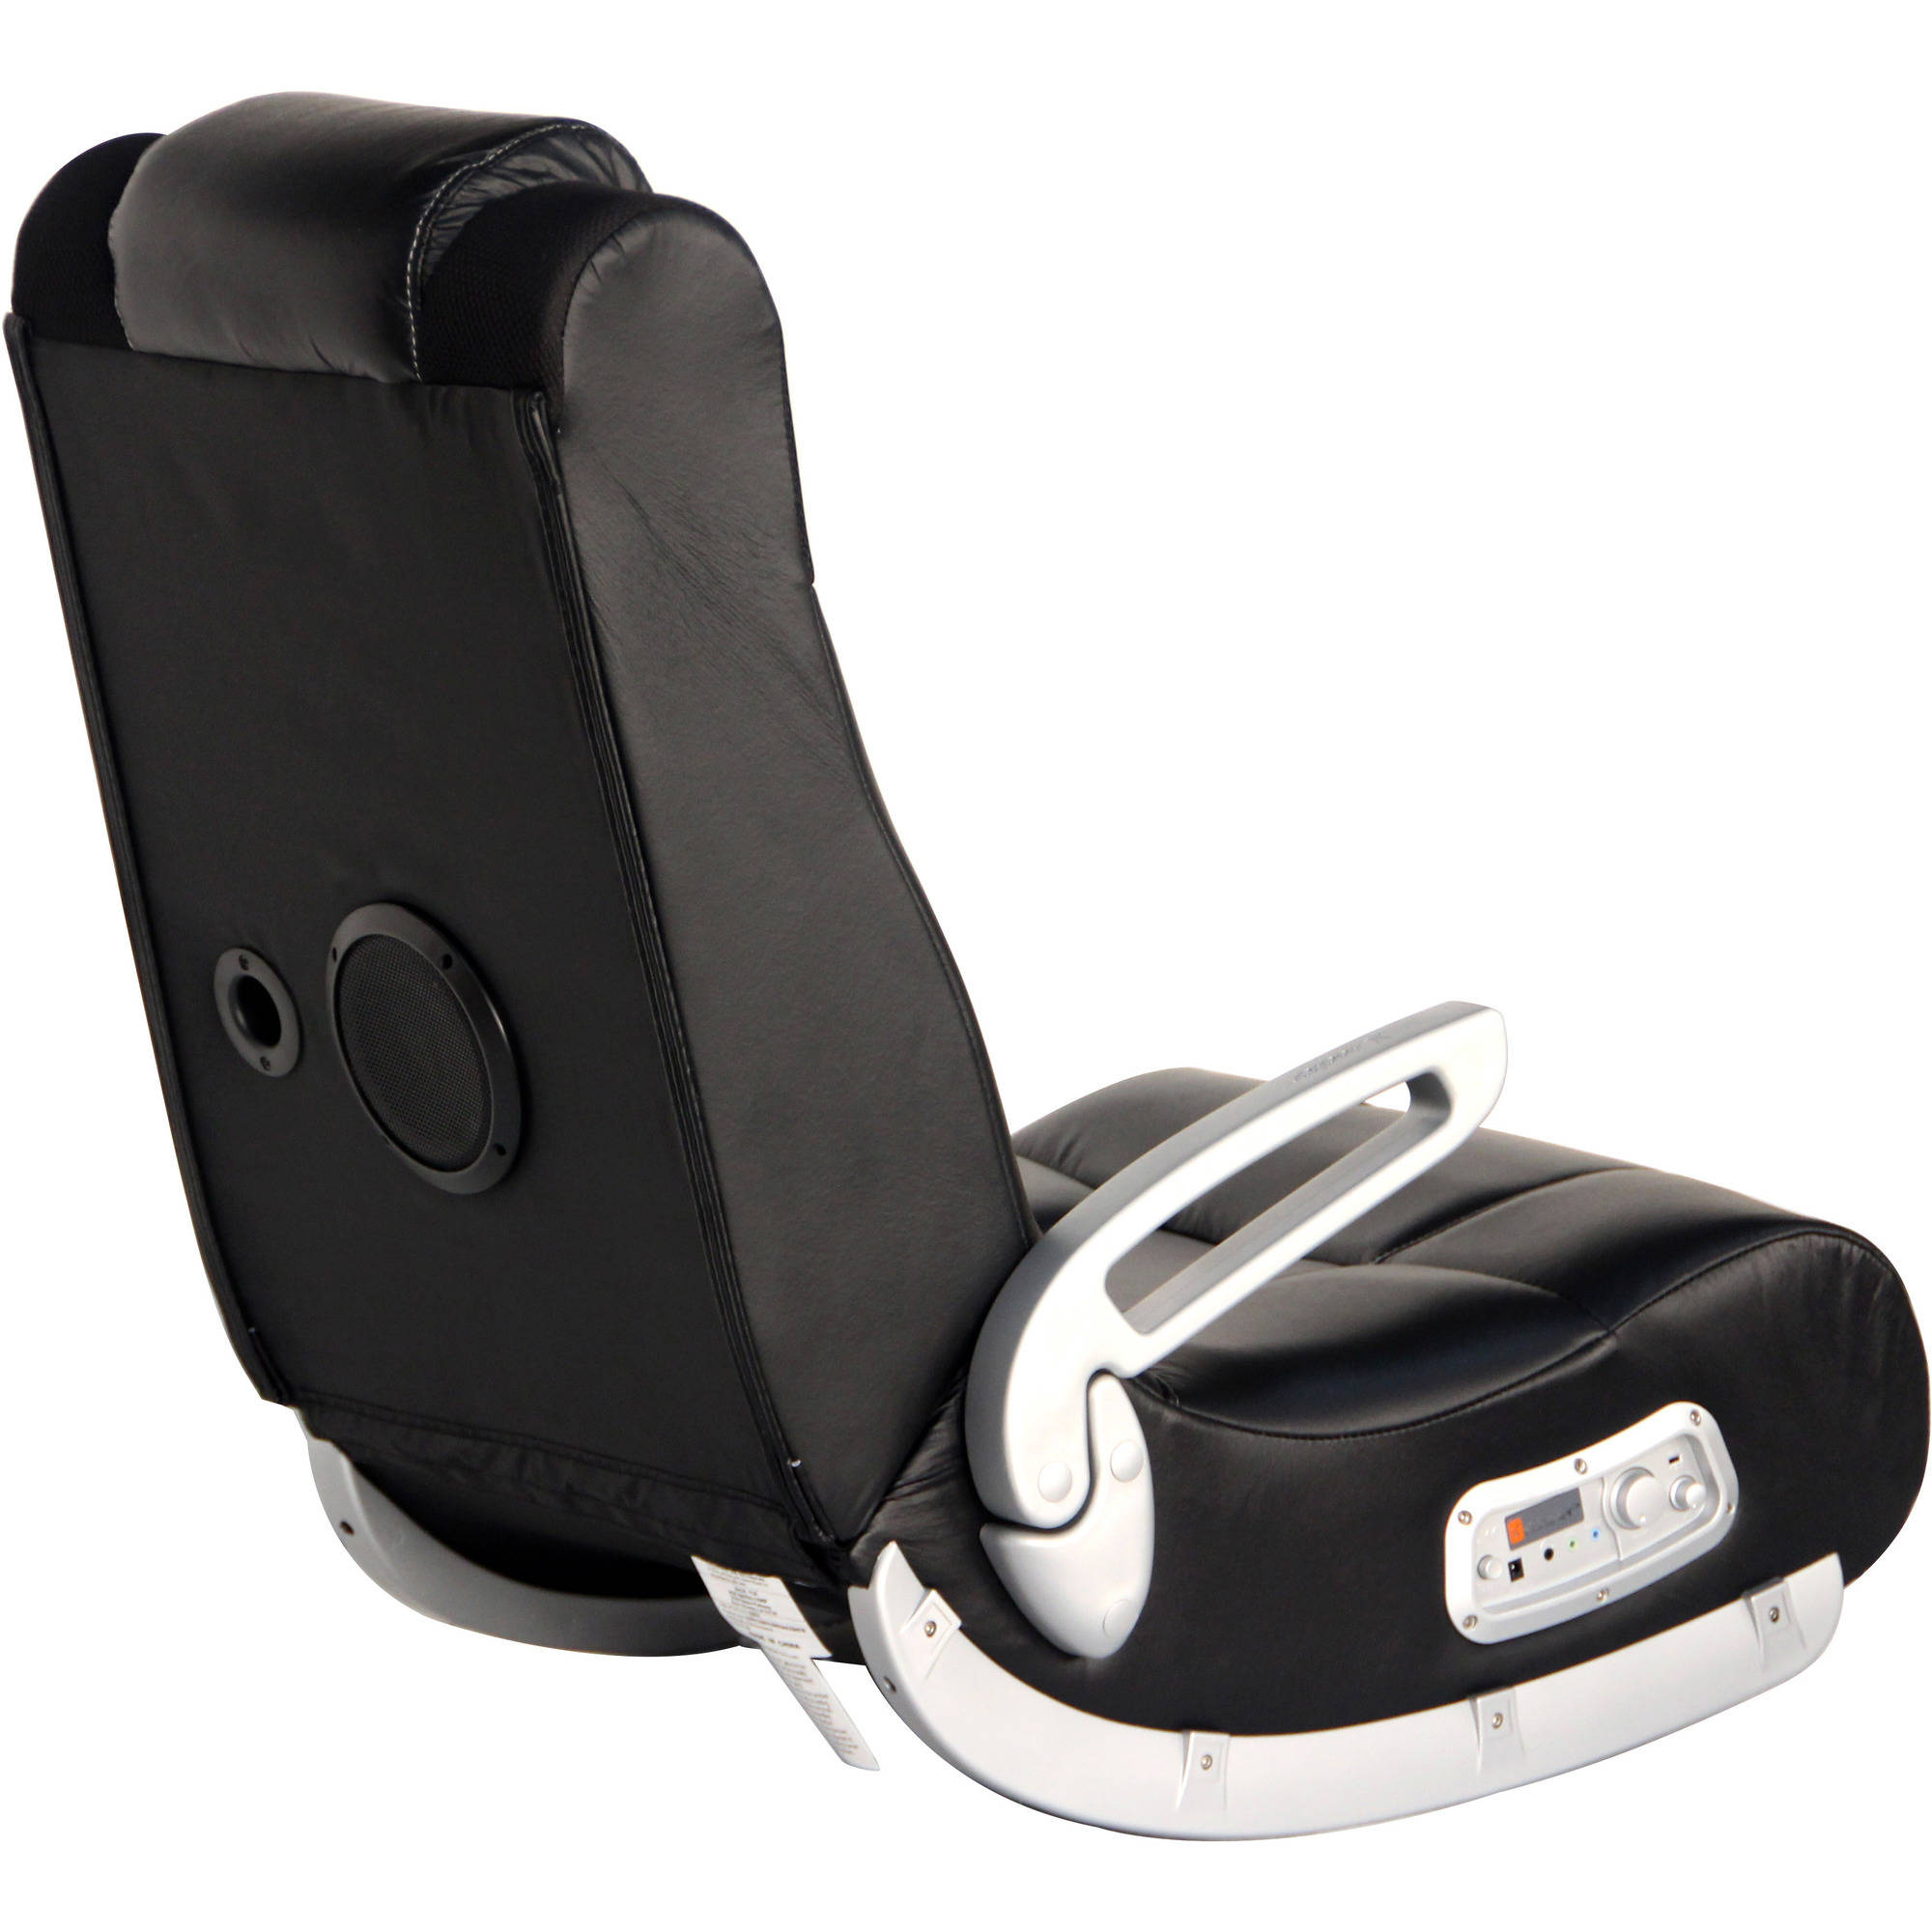 X Rocker II SE 2.1 Wireless Gaming Chair Rocker, Black - image 5 of 7